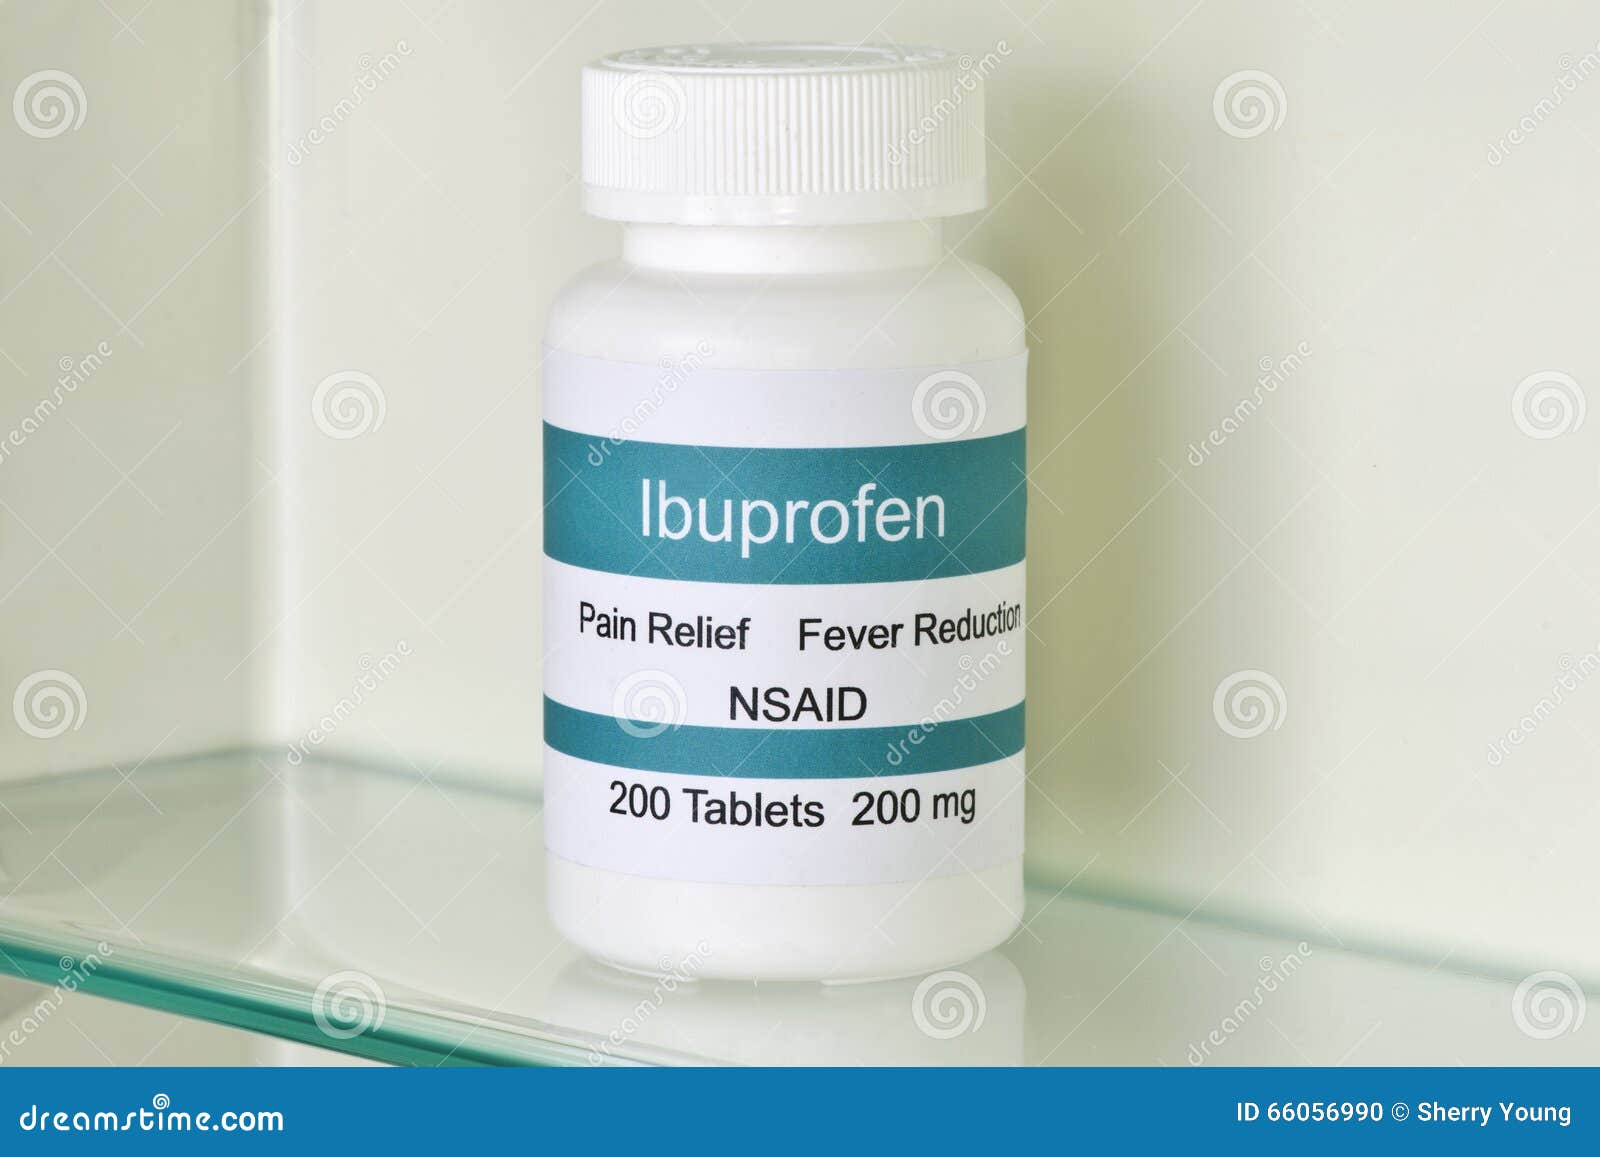 Ibuprofen Medicine Cabinet Stock Photo Image Of Headache 66056990